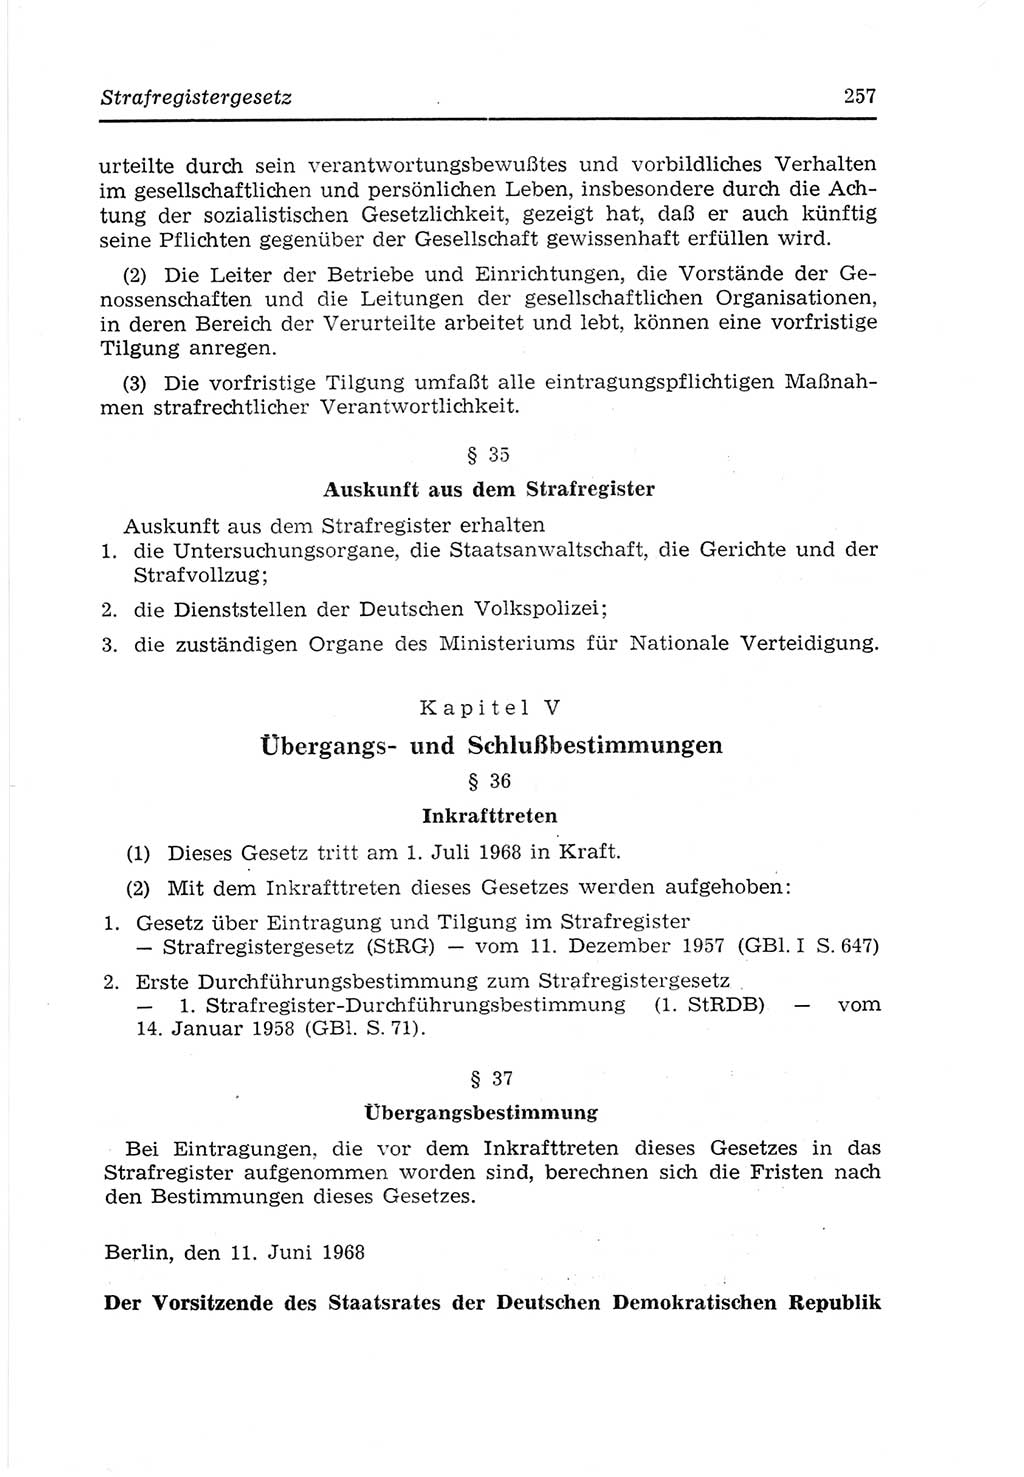 Strafvollzugs- und Wiedereingliederungsgesetz (SVWG) der Deutschen Demokratischen Republik (DDR) 1968, Seite 257 (SVWG DDR 1968, S. 257)